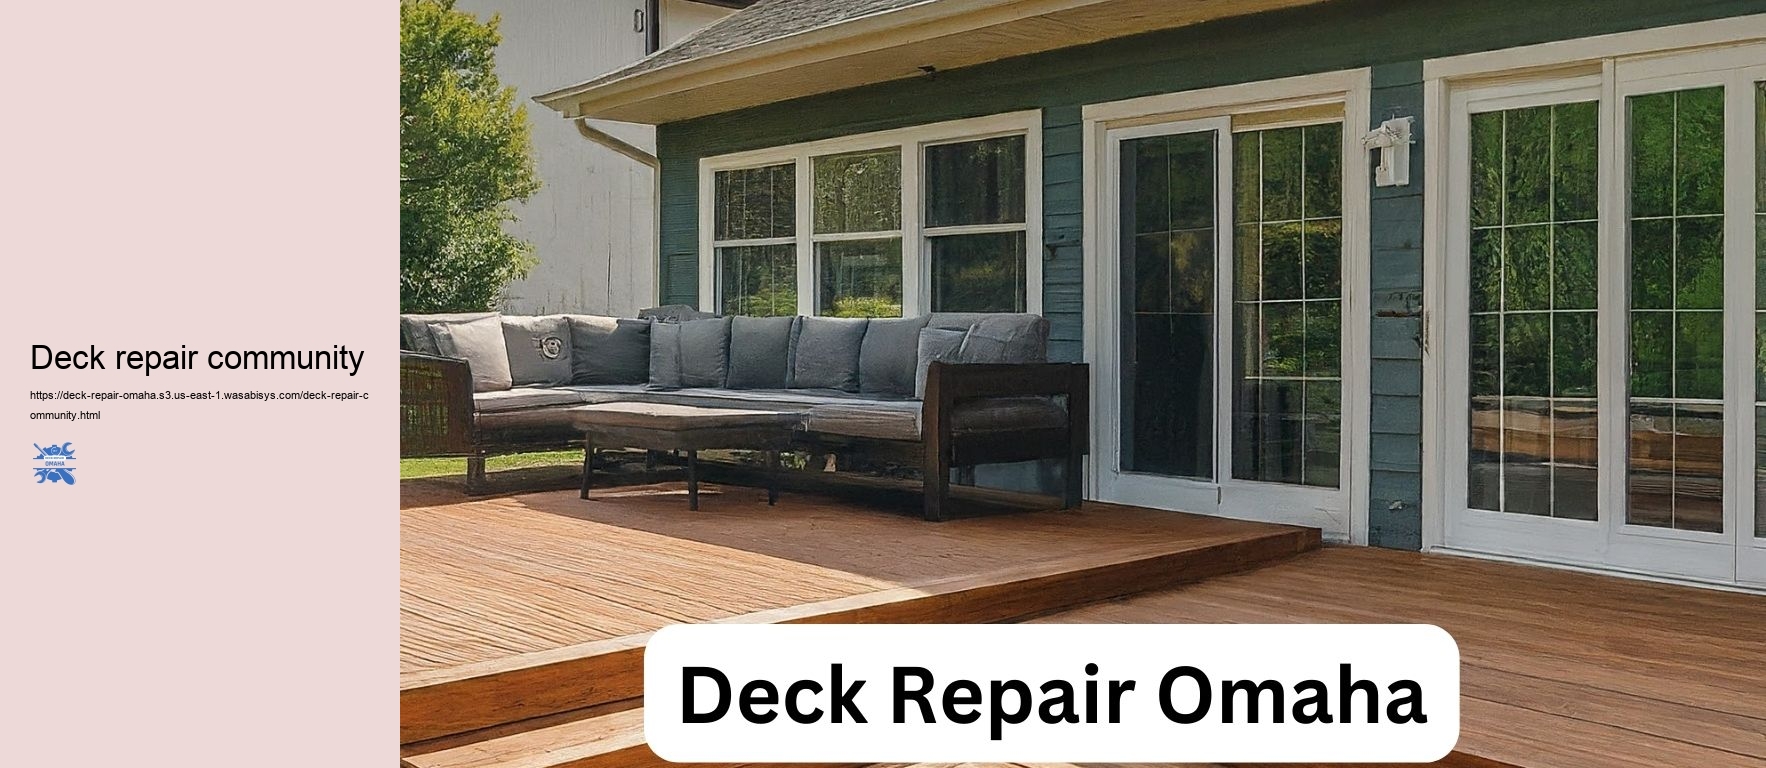 Deck repair community